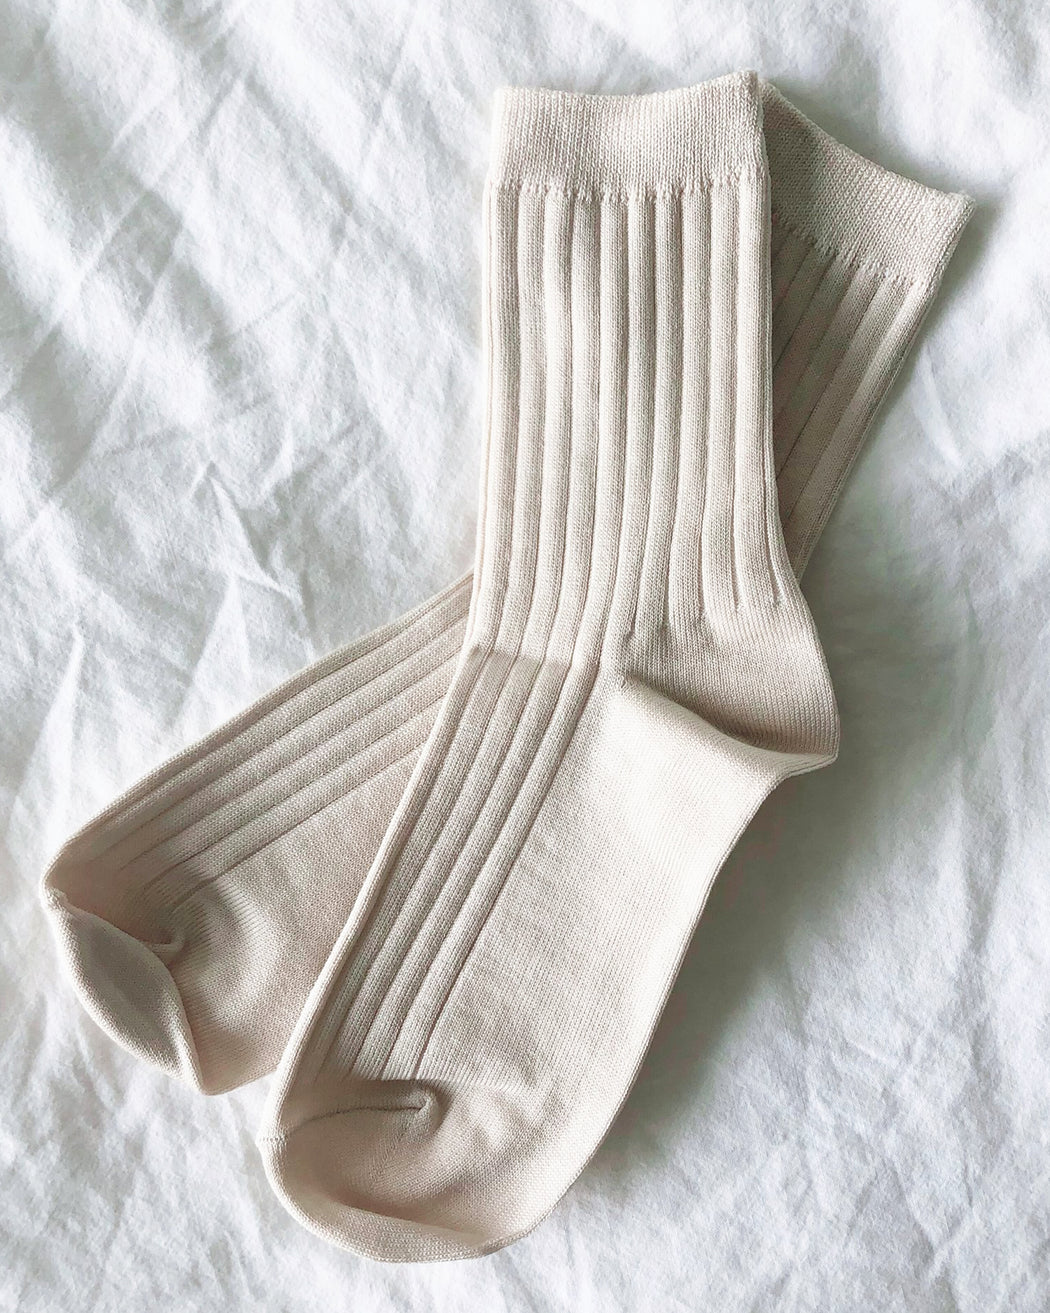 Her Socks – Porcelain